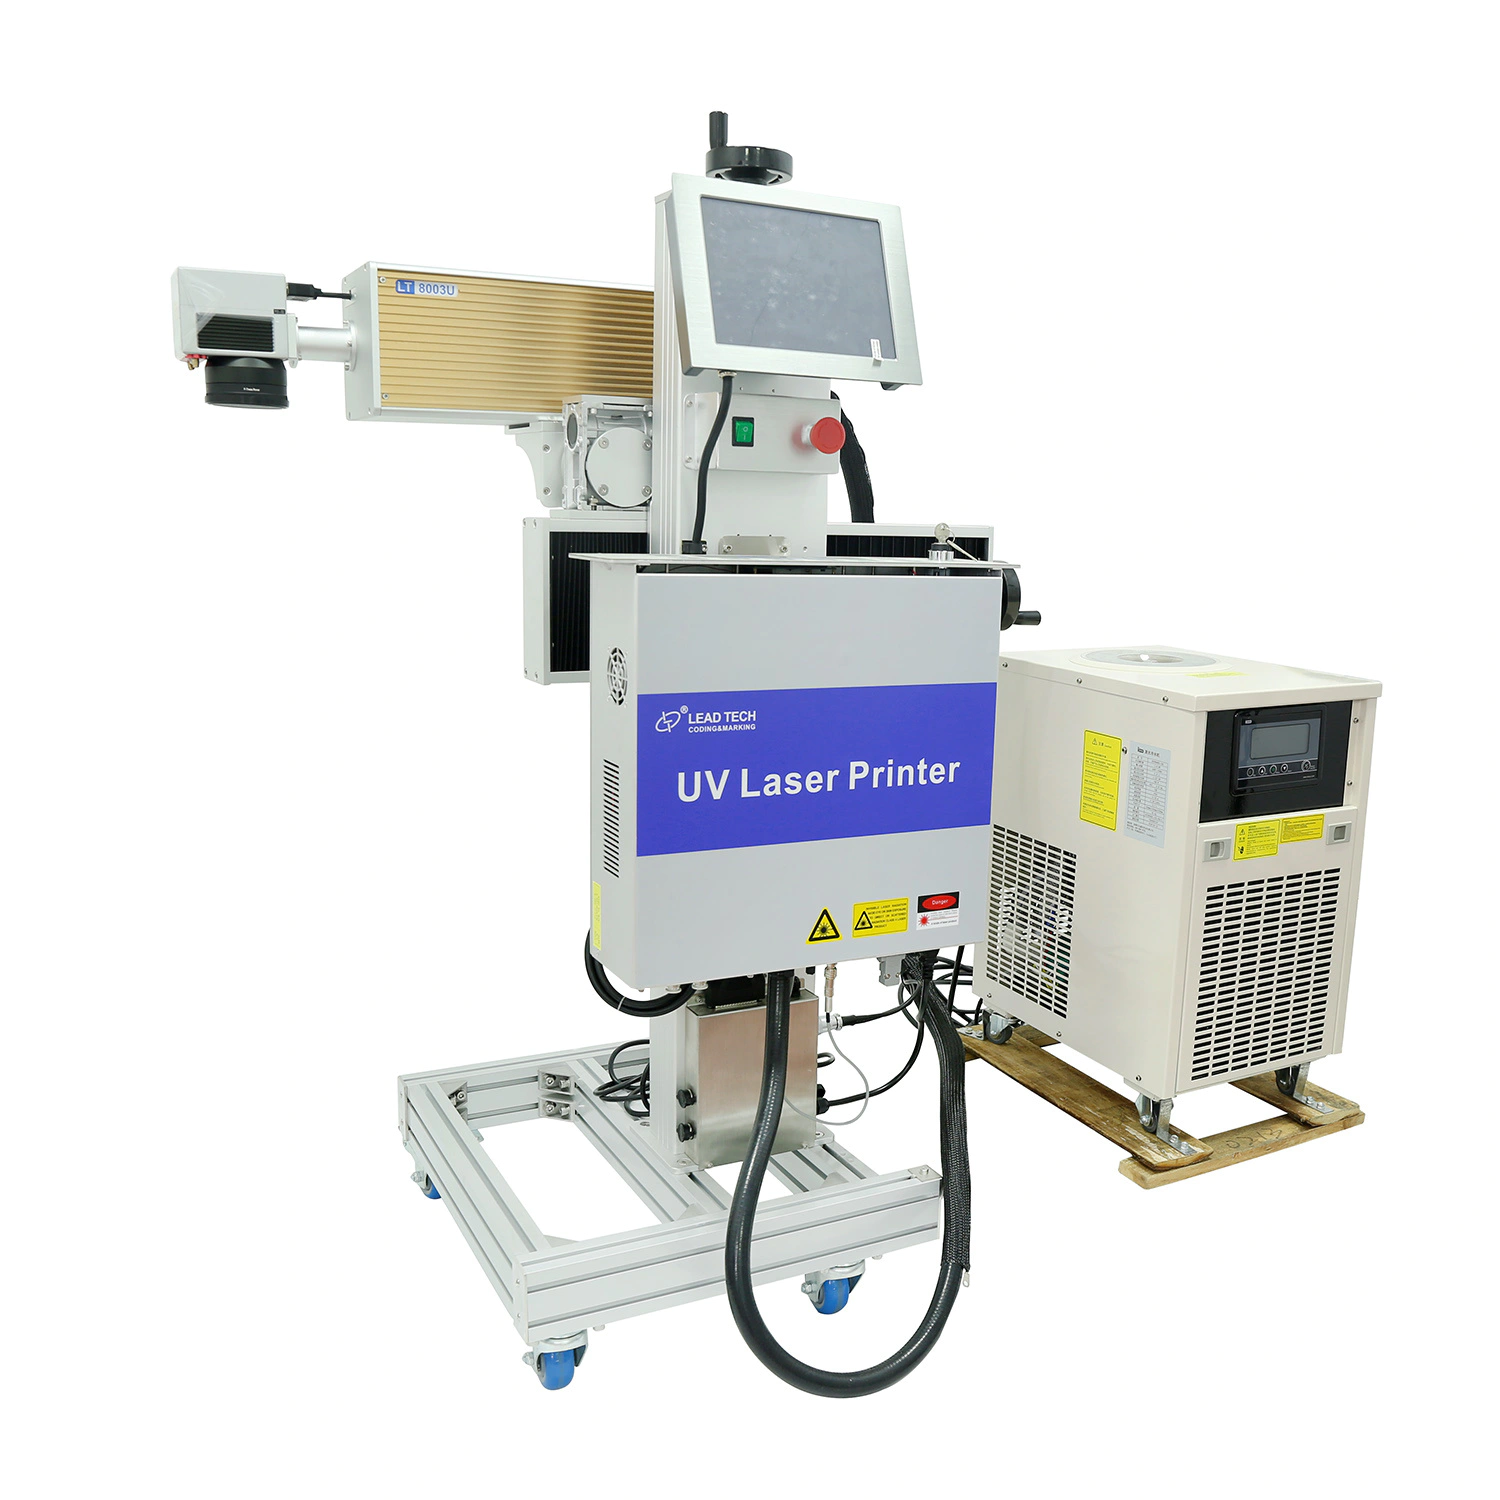 Lt8003u/Lt8005u UV High Performance Digital Laser Printer for Stainless Steel Metal Printing